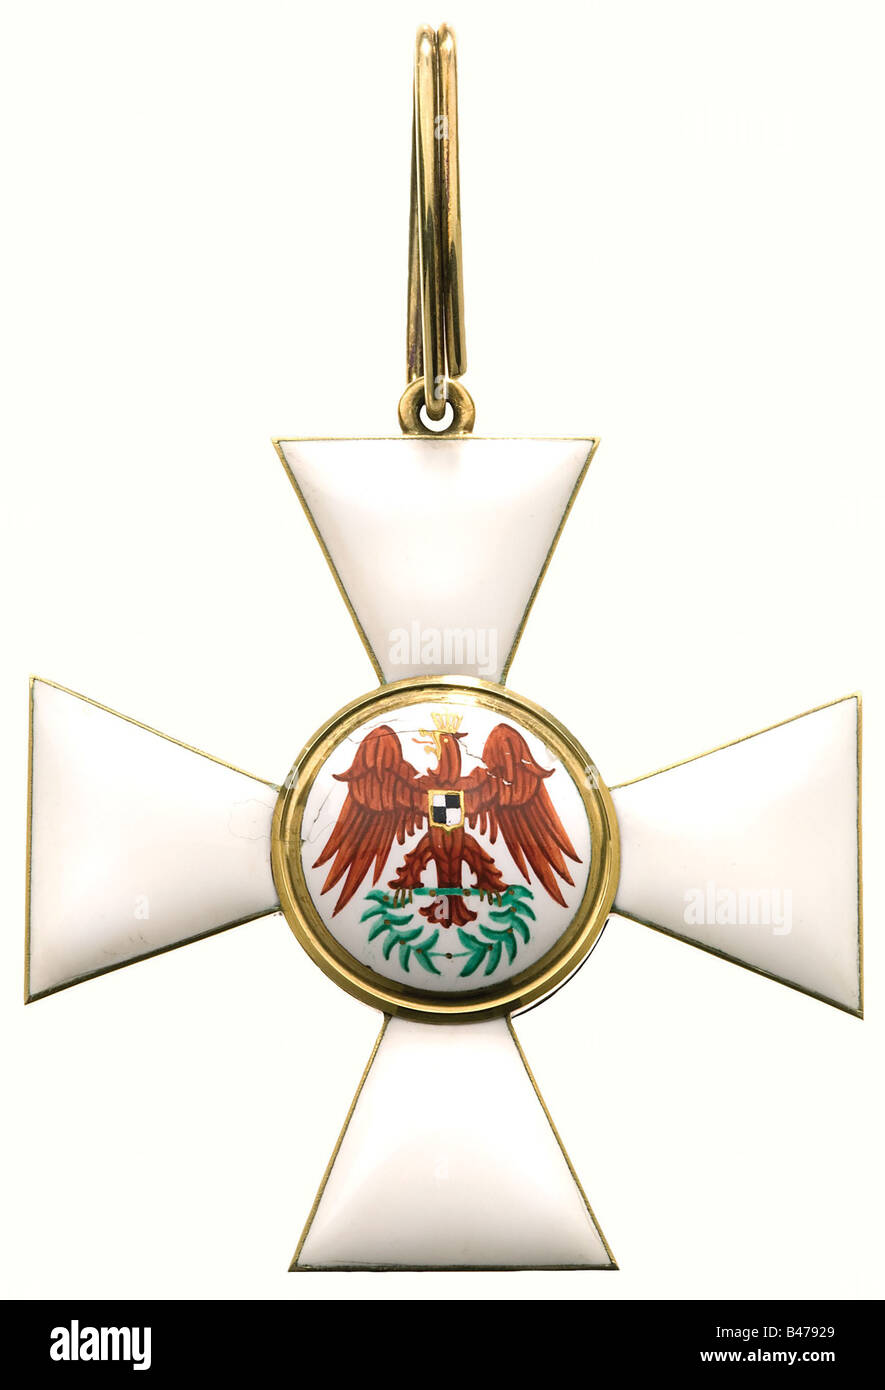 Ordre de l'aigle rouge, une Croix de 1ère classe (OEK 1637). Or (18 carats), émaillé. Le bord supérieur droit de la médaillon est légèrement ébréché. Il y a une marque rayée « W » sur le bras inférieur de la croix pour le Jeweler Wilm à Berlin. Historique, historique, XIXe siècle, médaille, décoration, médailles, décorations, insigne d'honneur, insigne d'honneur, insignes d'honneur, insignes d'honneur, objet, objets, photos, coupures, coupures, coupures, découpe, coupures, coupures, Banque D'Images